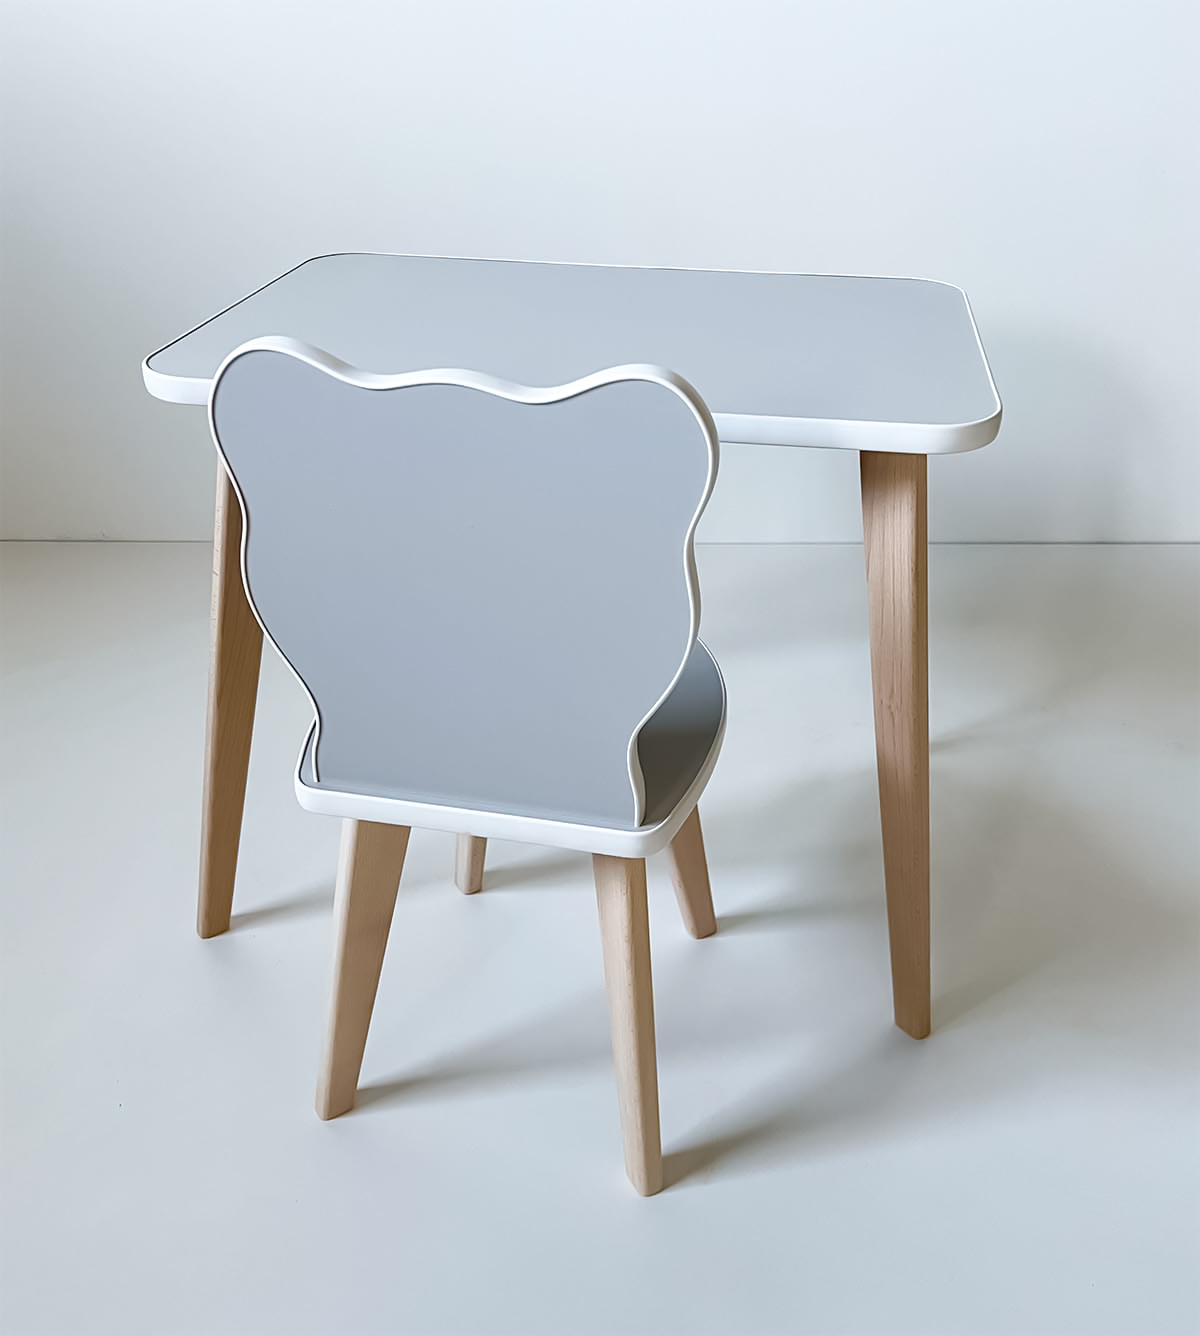 Комплект детской мебели RuLes прямоугольный столик и стульчик мишка, серый 12620